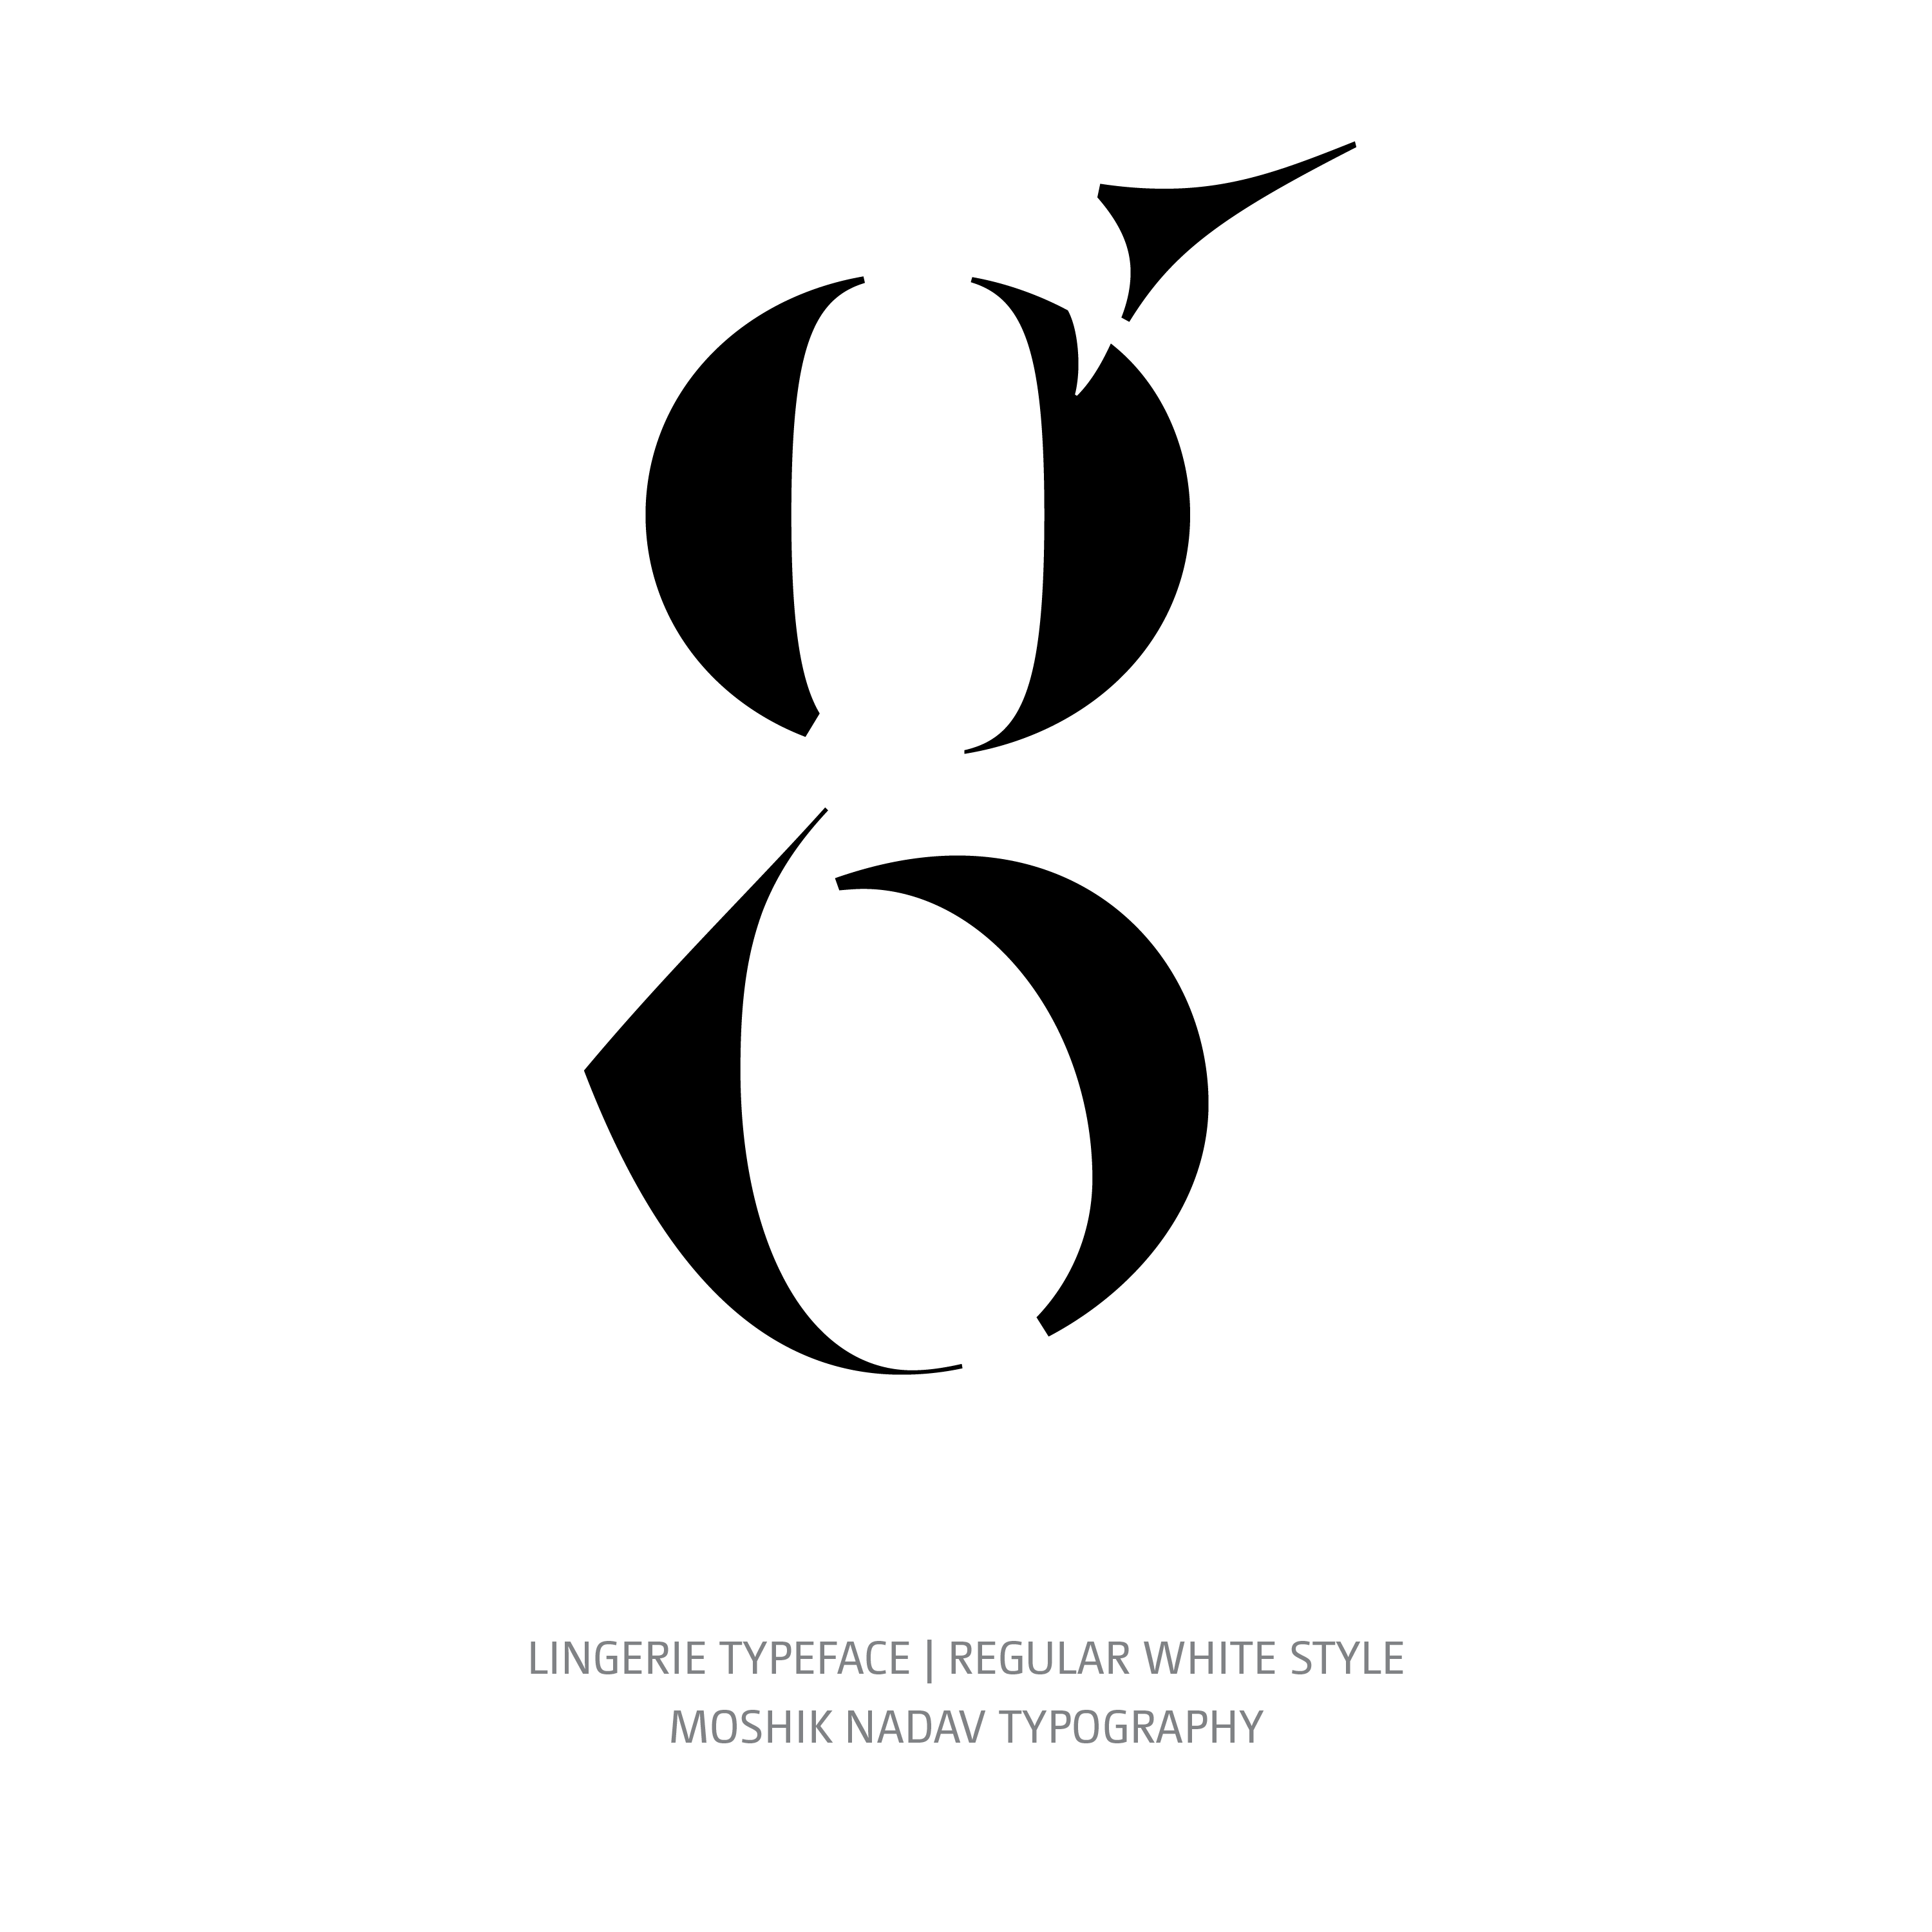 Lingerie Typeface Regular White g